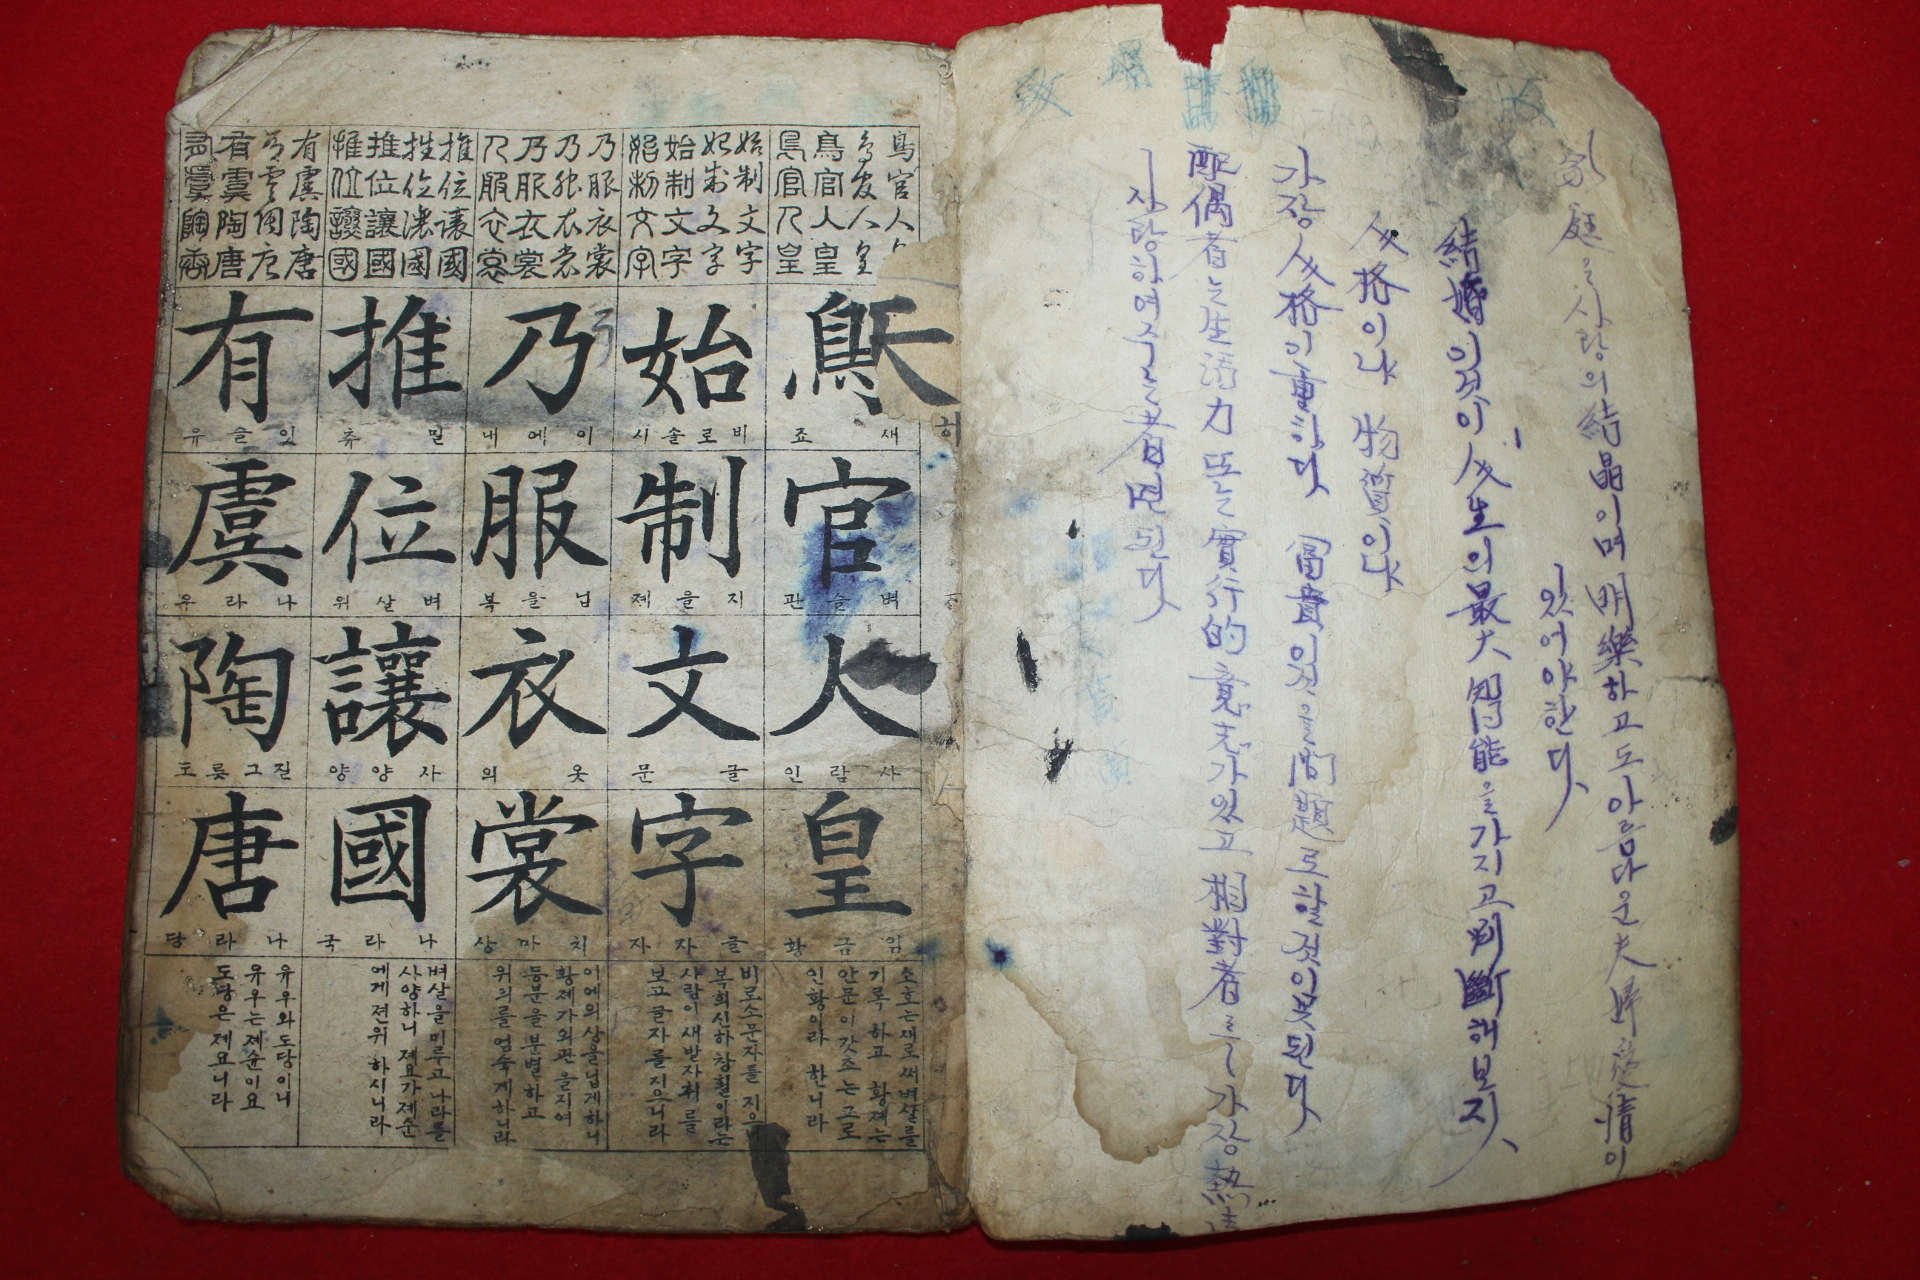 1946년 진주개문사 오체천자문(五體千字文) 1책완질